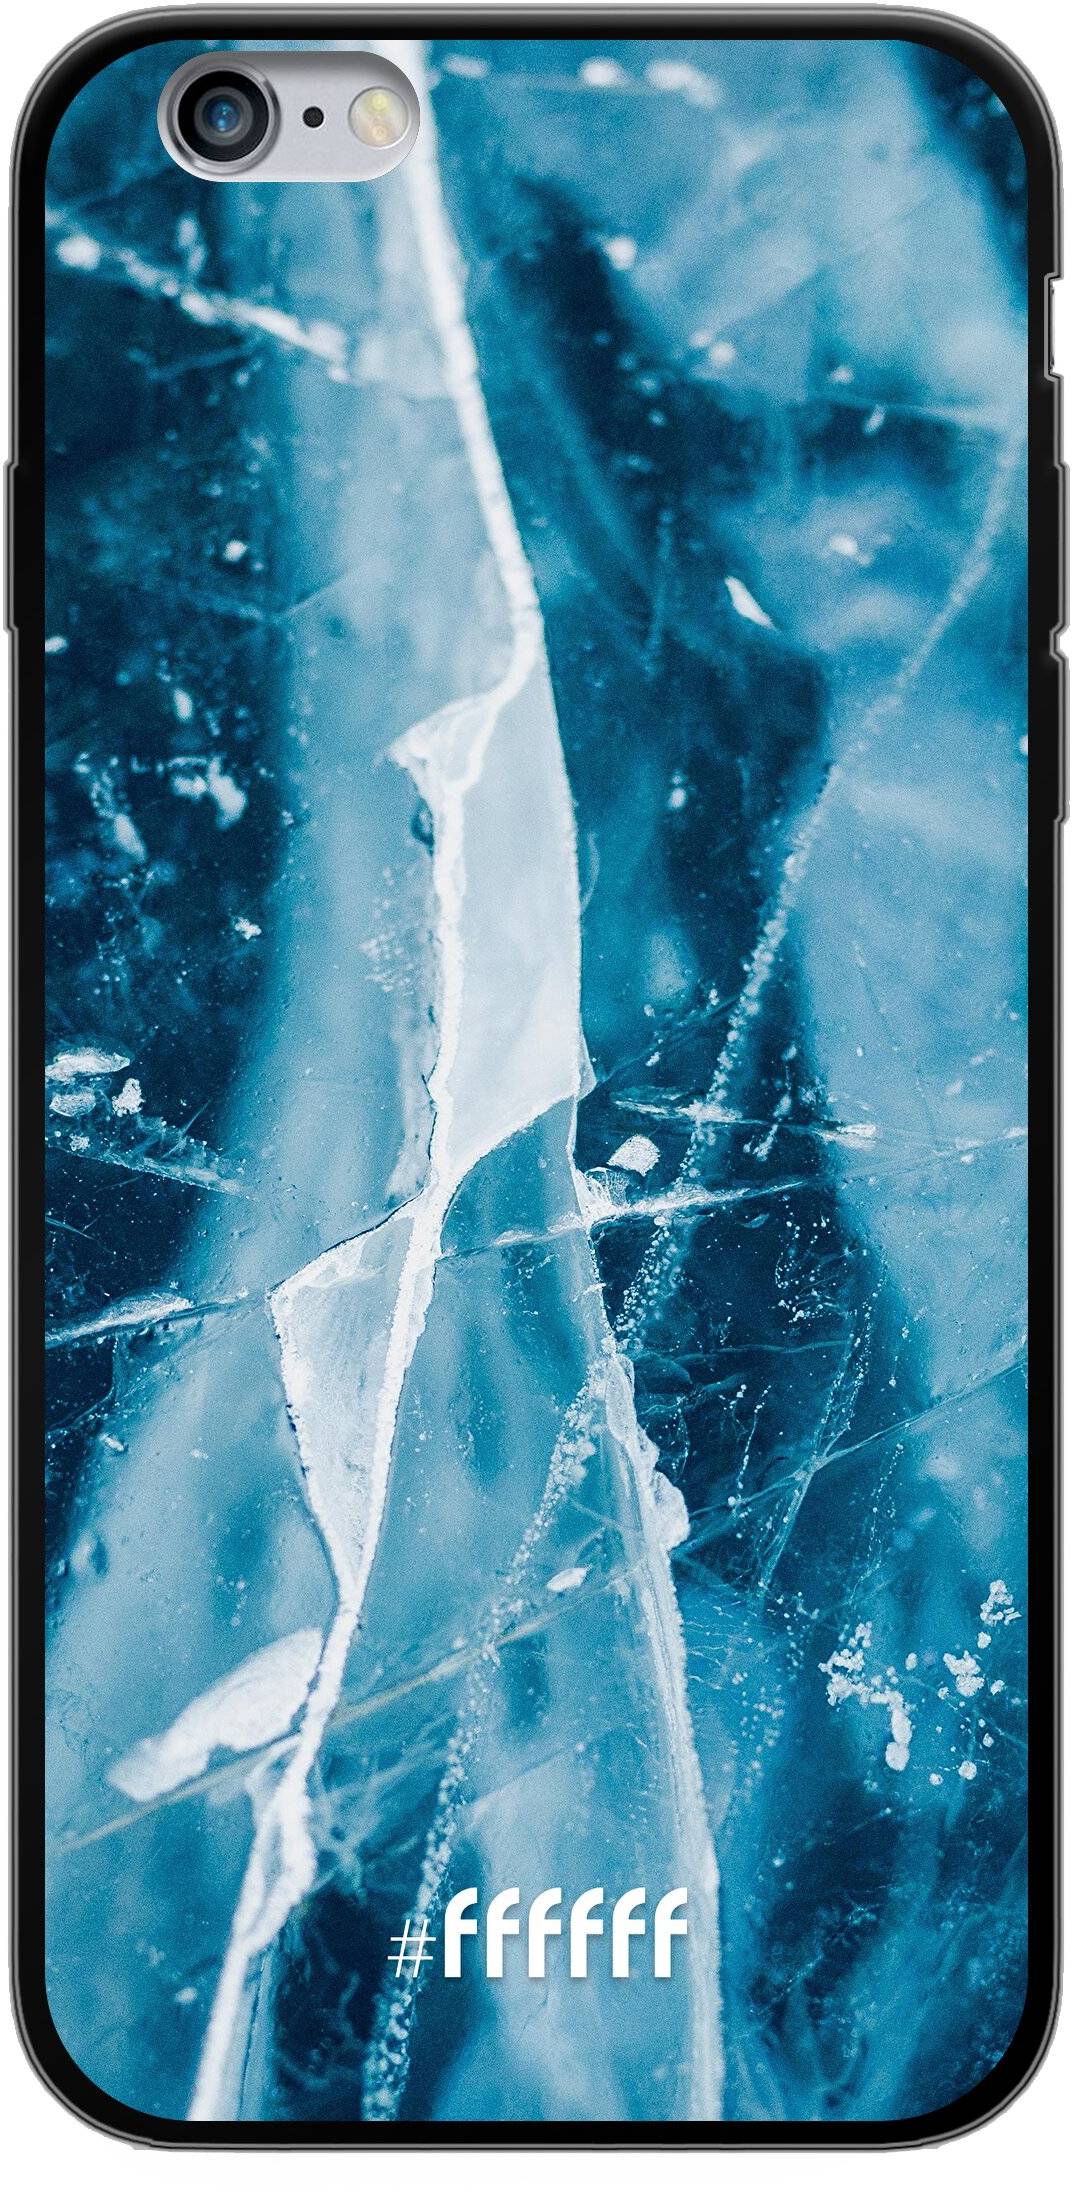 Cracked Ice iPhone 6